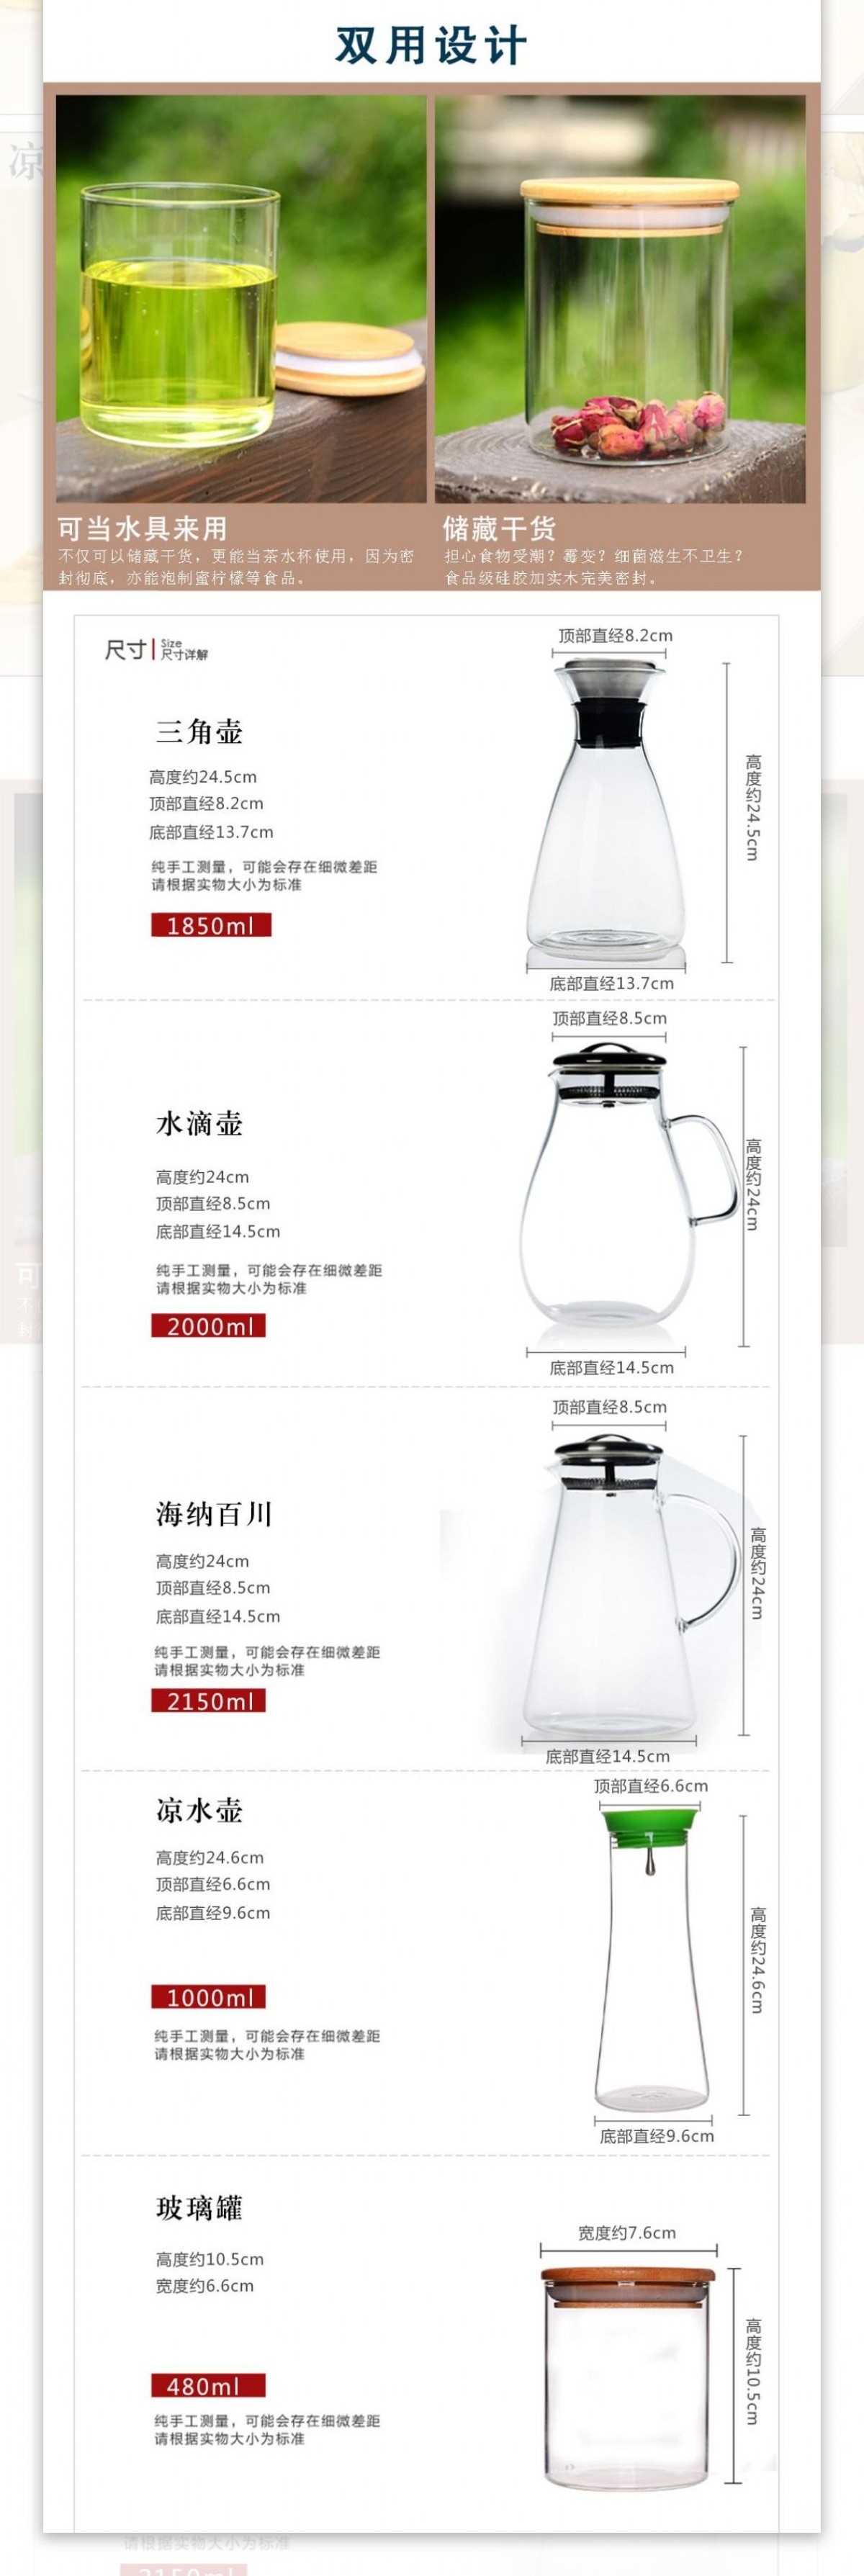 淘宝玻璃凉水壶茶具套装详情页设计